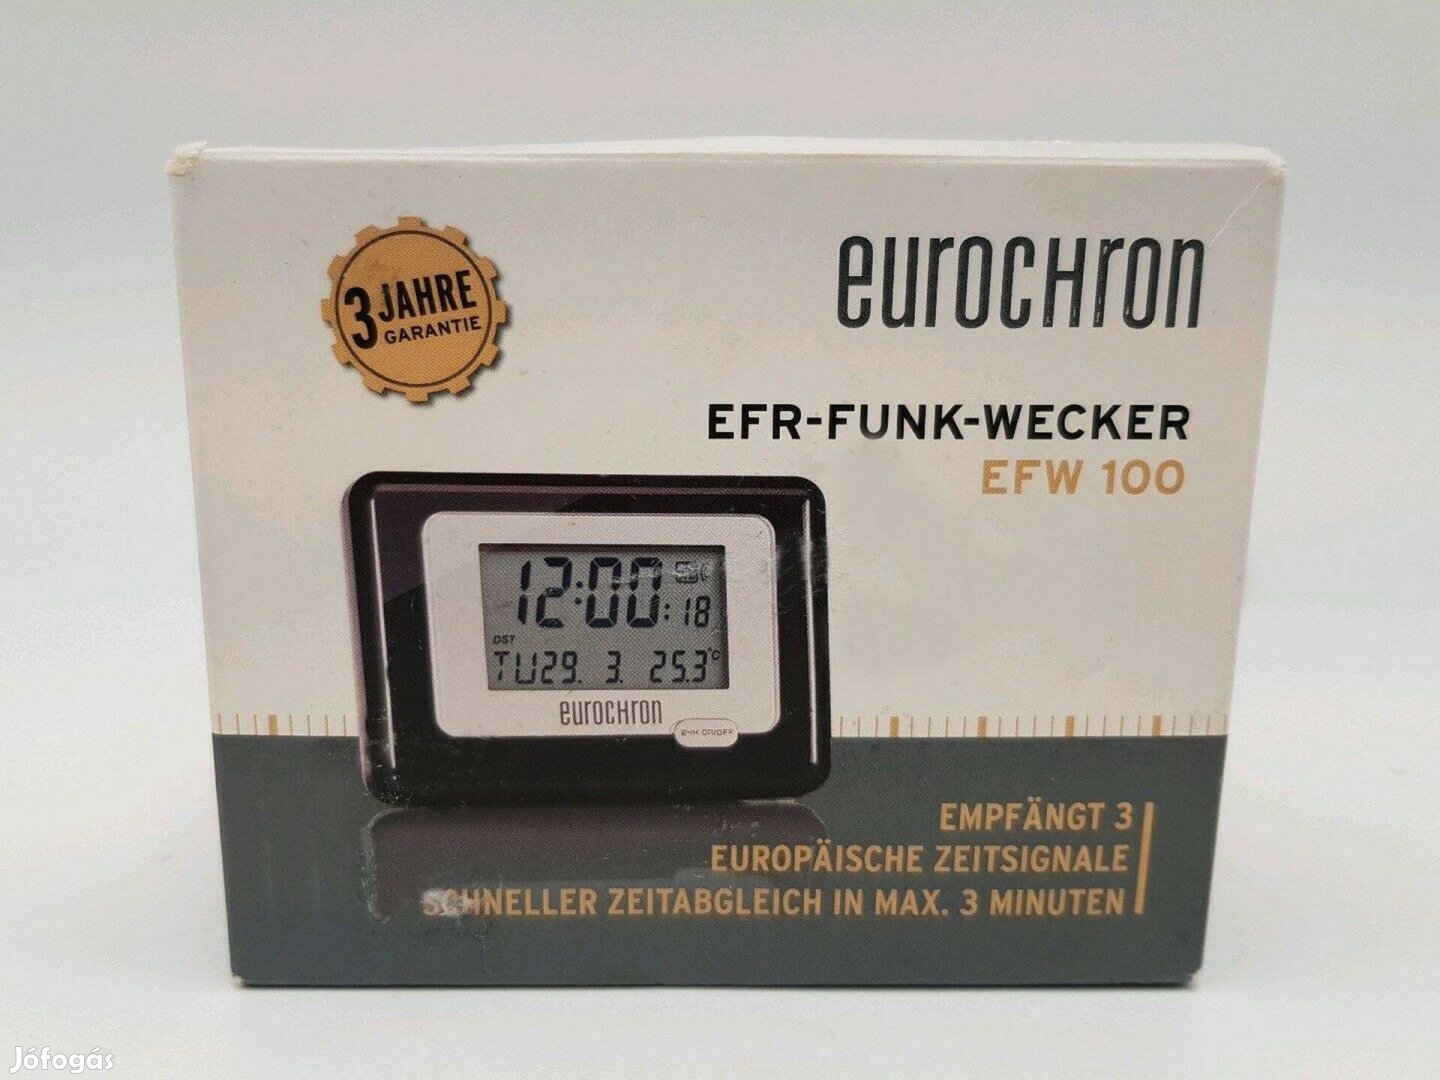 Keresek: Eurochron EFW 100 Meteotime II ébresztőórát keresek